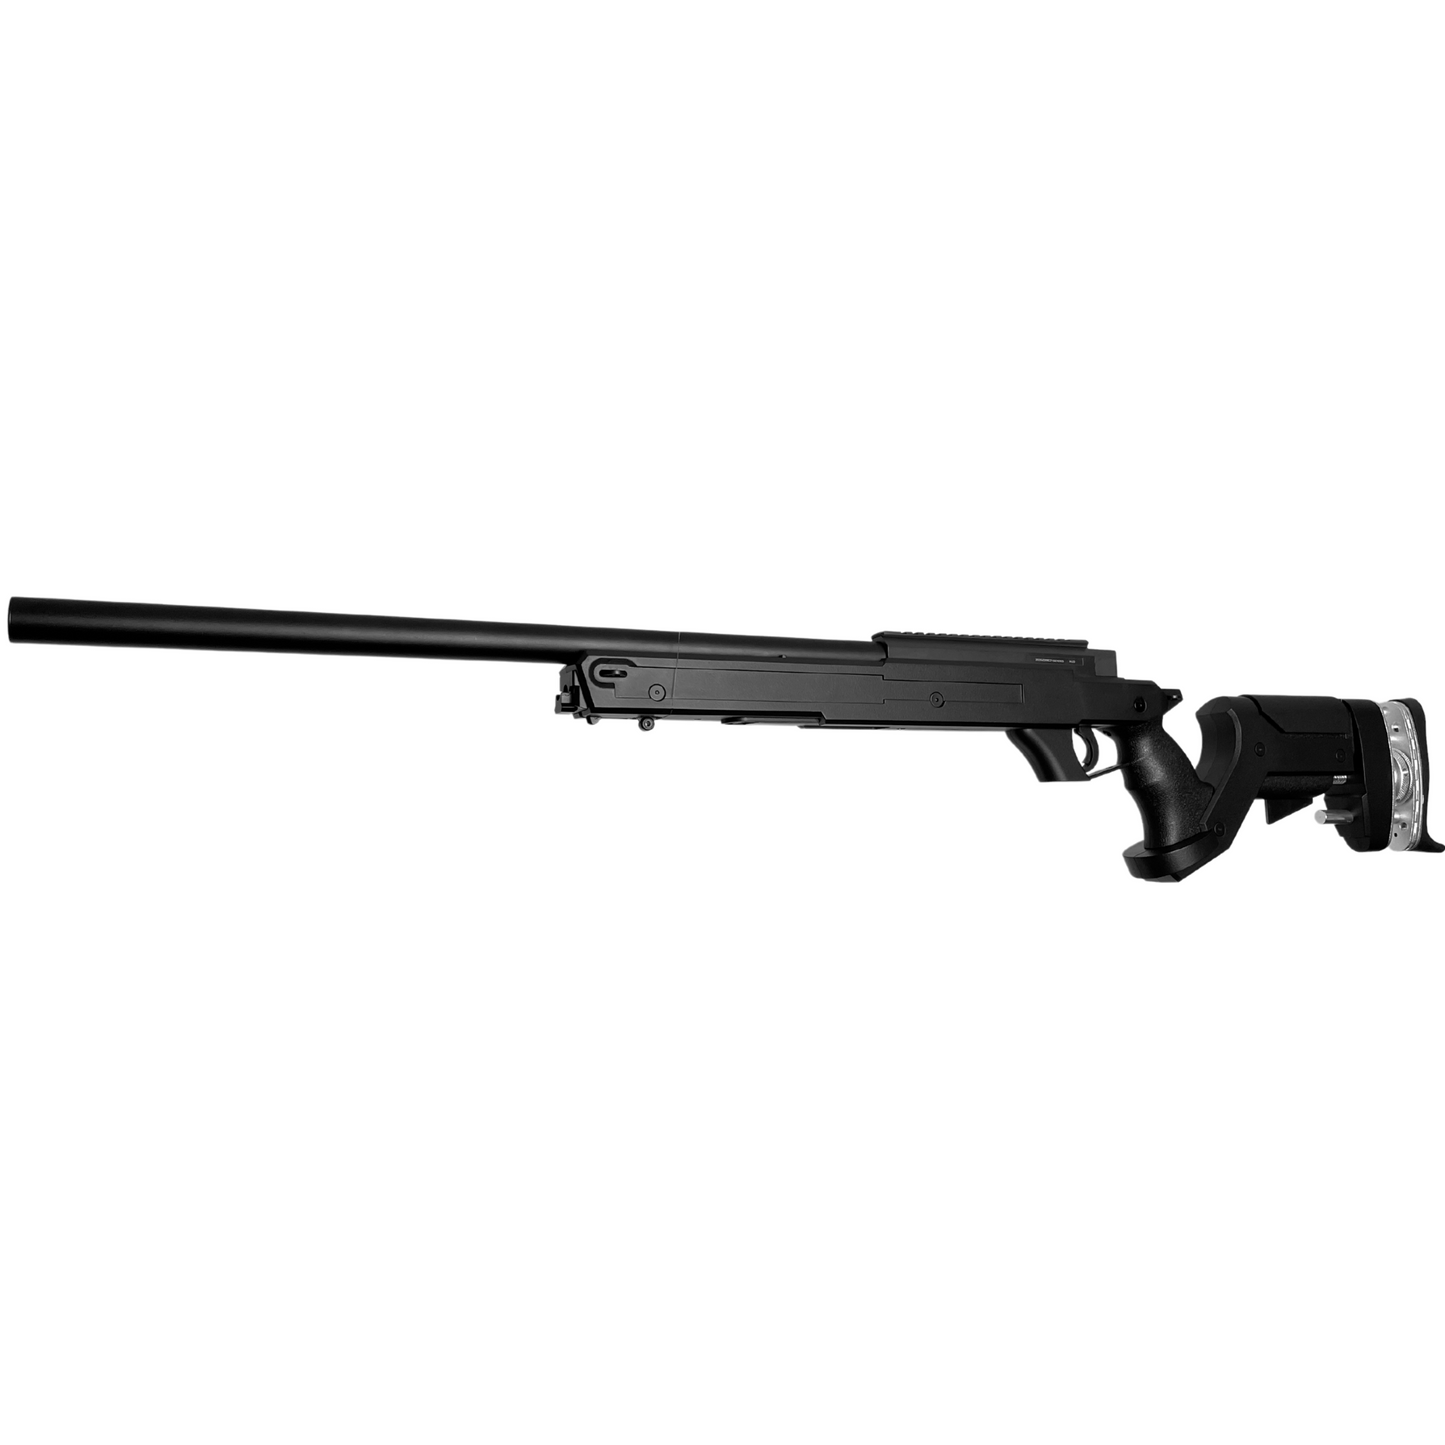 MB05 Tactical Metal Sniper Rifle